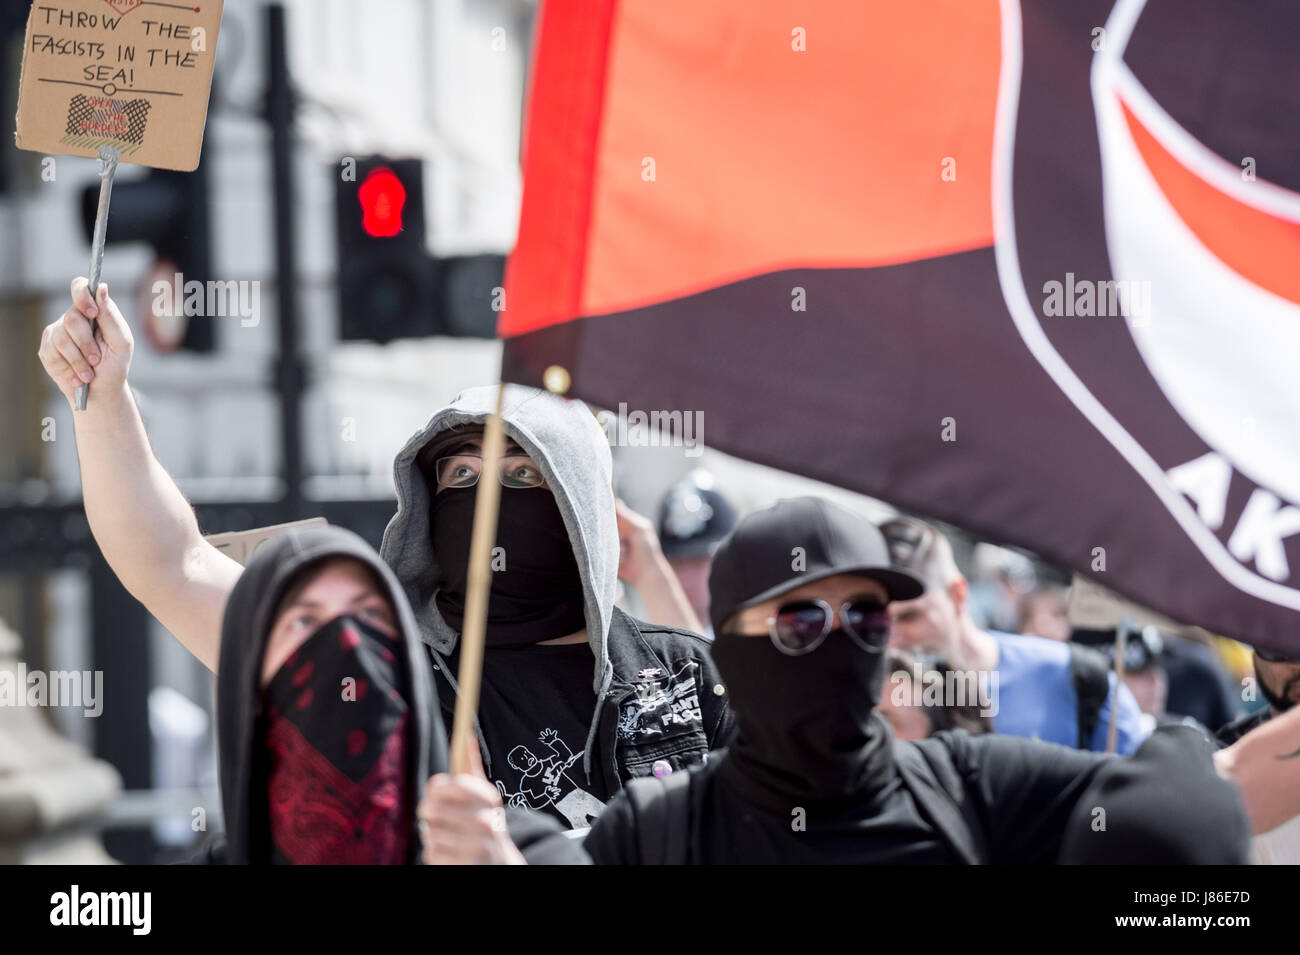 Londra, Regno Unito. 27 Maggio, 2017. Un piccolo gruppo di antifascisti e anarchici marzo attraverso Whitehall come parte di un anti-partito Tory protesta prima della prossima elezione generale. © Guy Corbishley/Alamy Live News Foto Stock